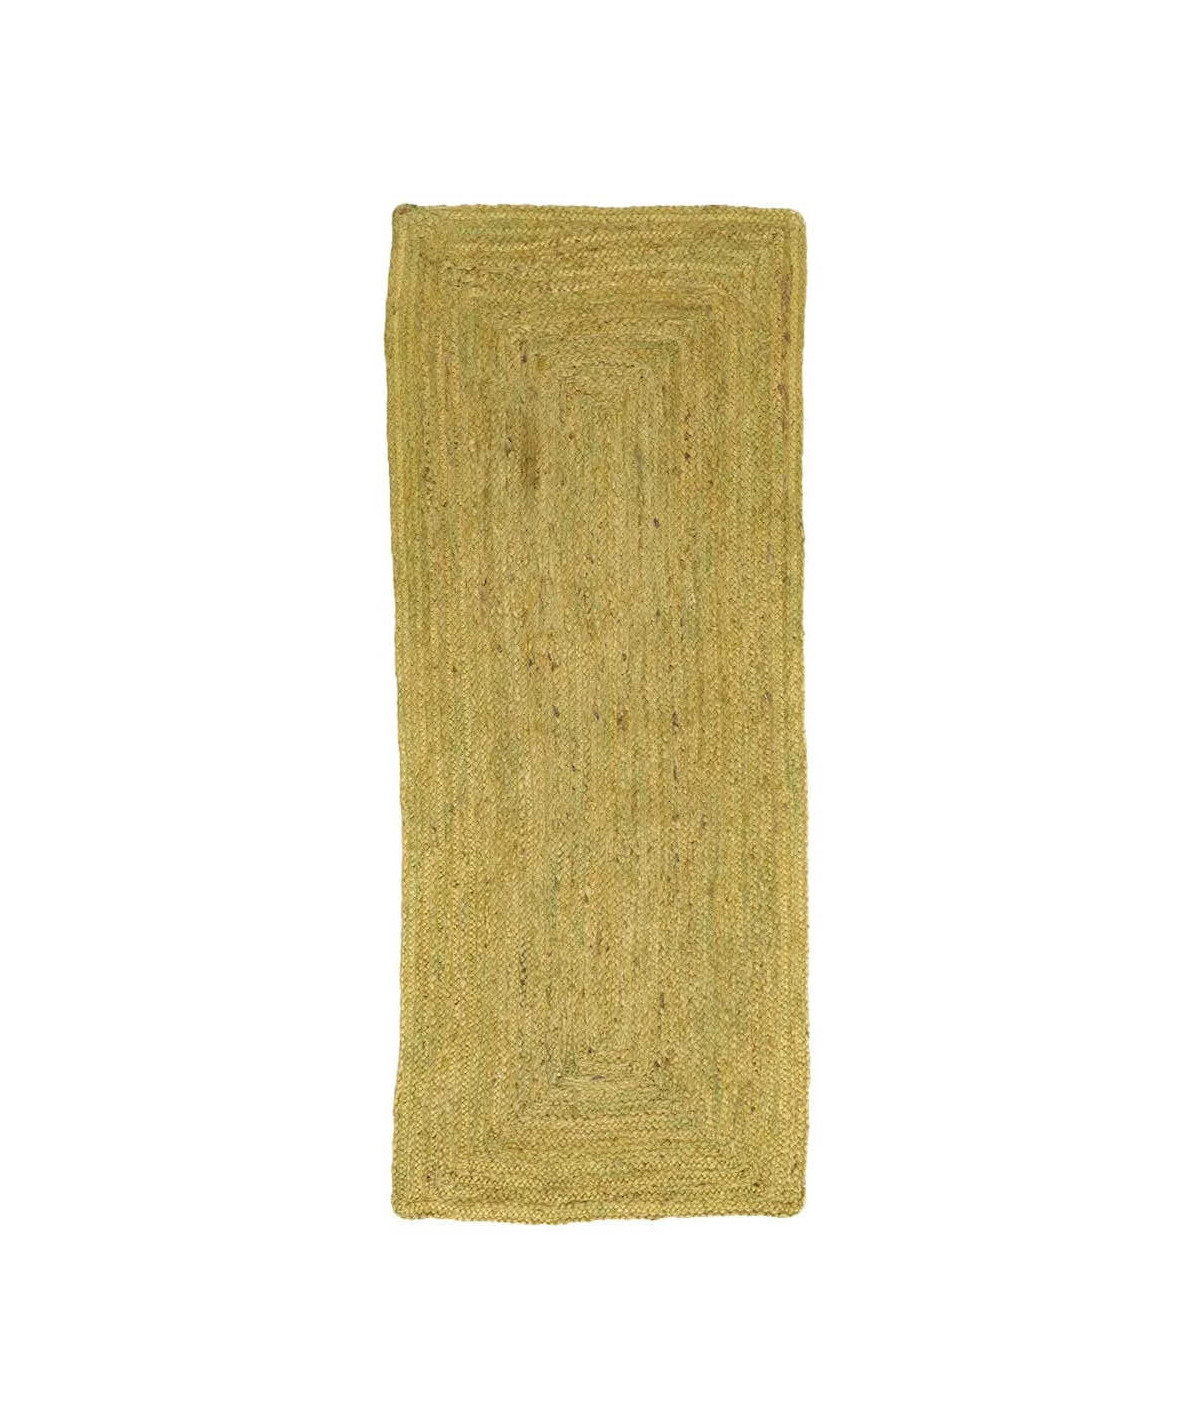 Tapis en jute rectangulaire vert 70x170cm Blainville - Yesdeko